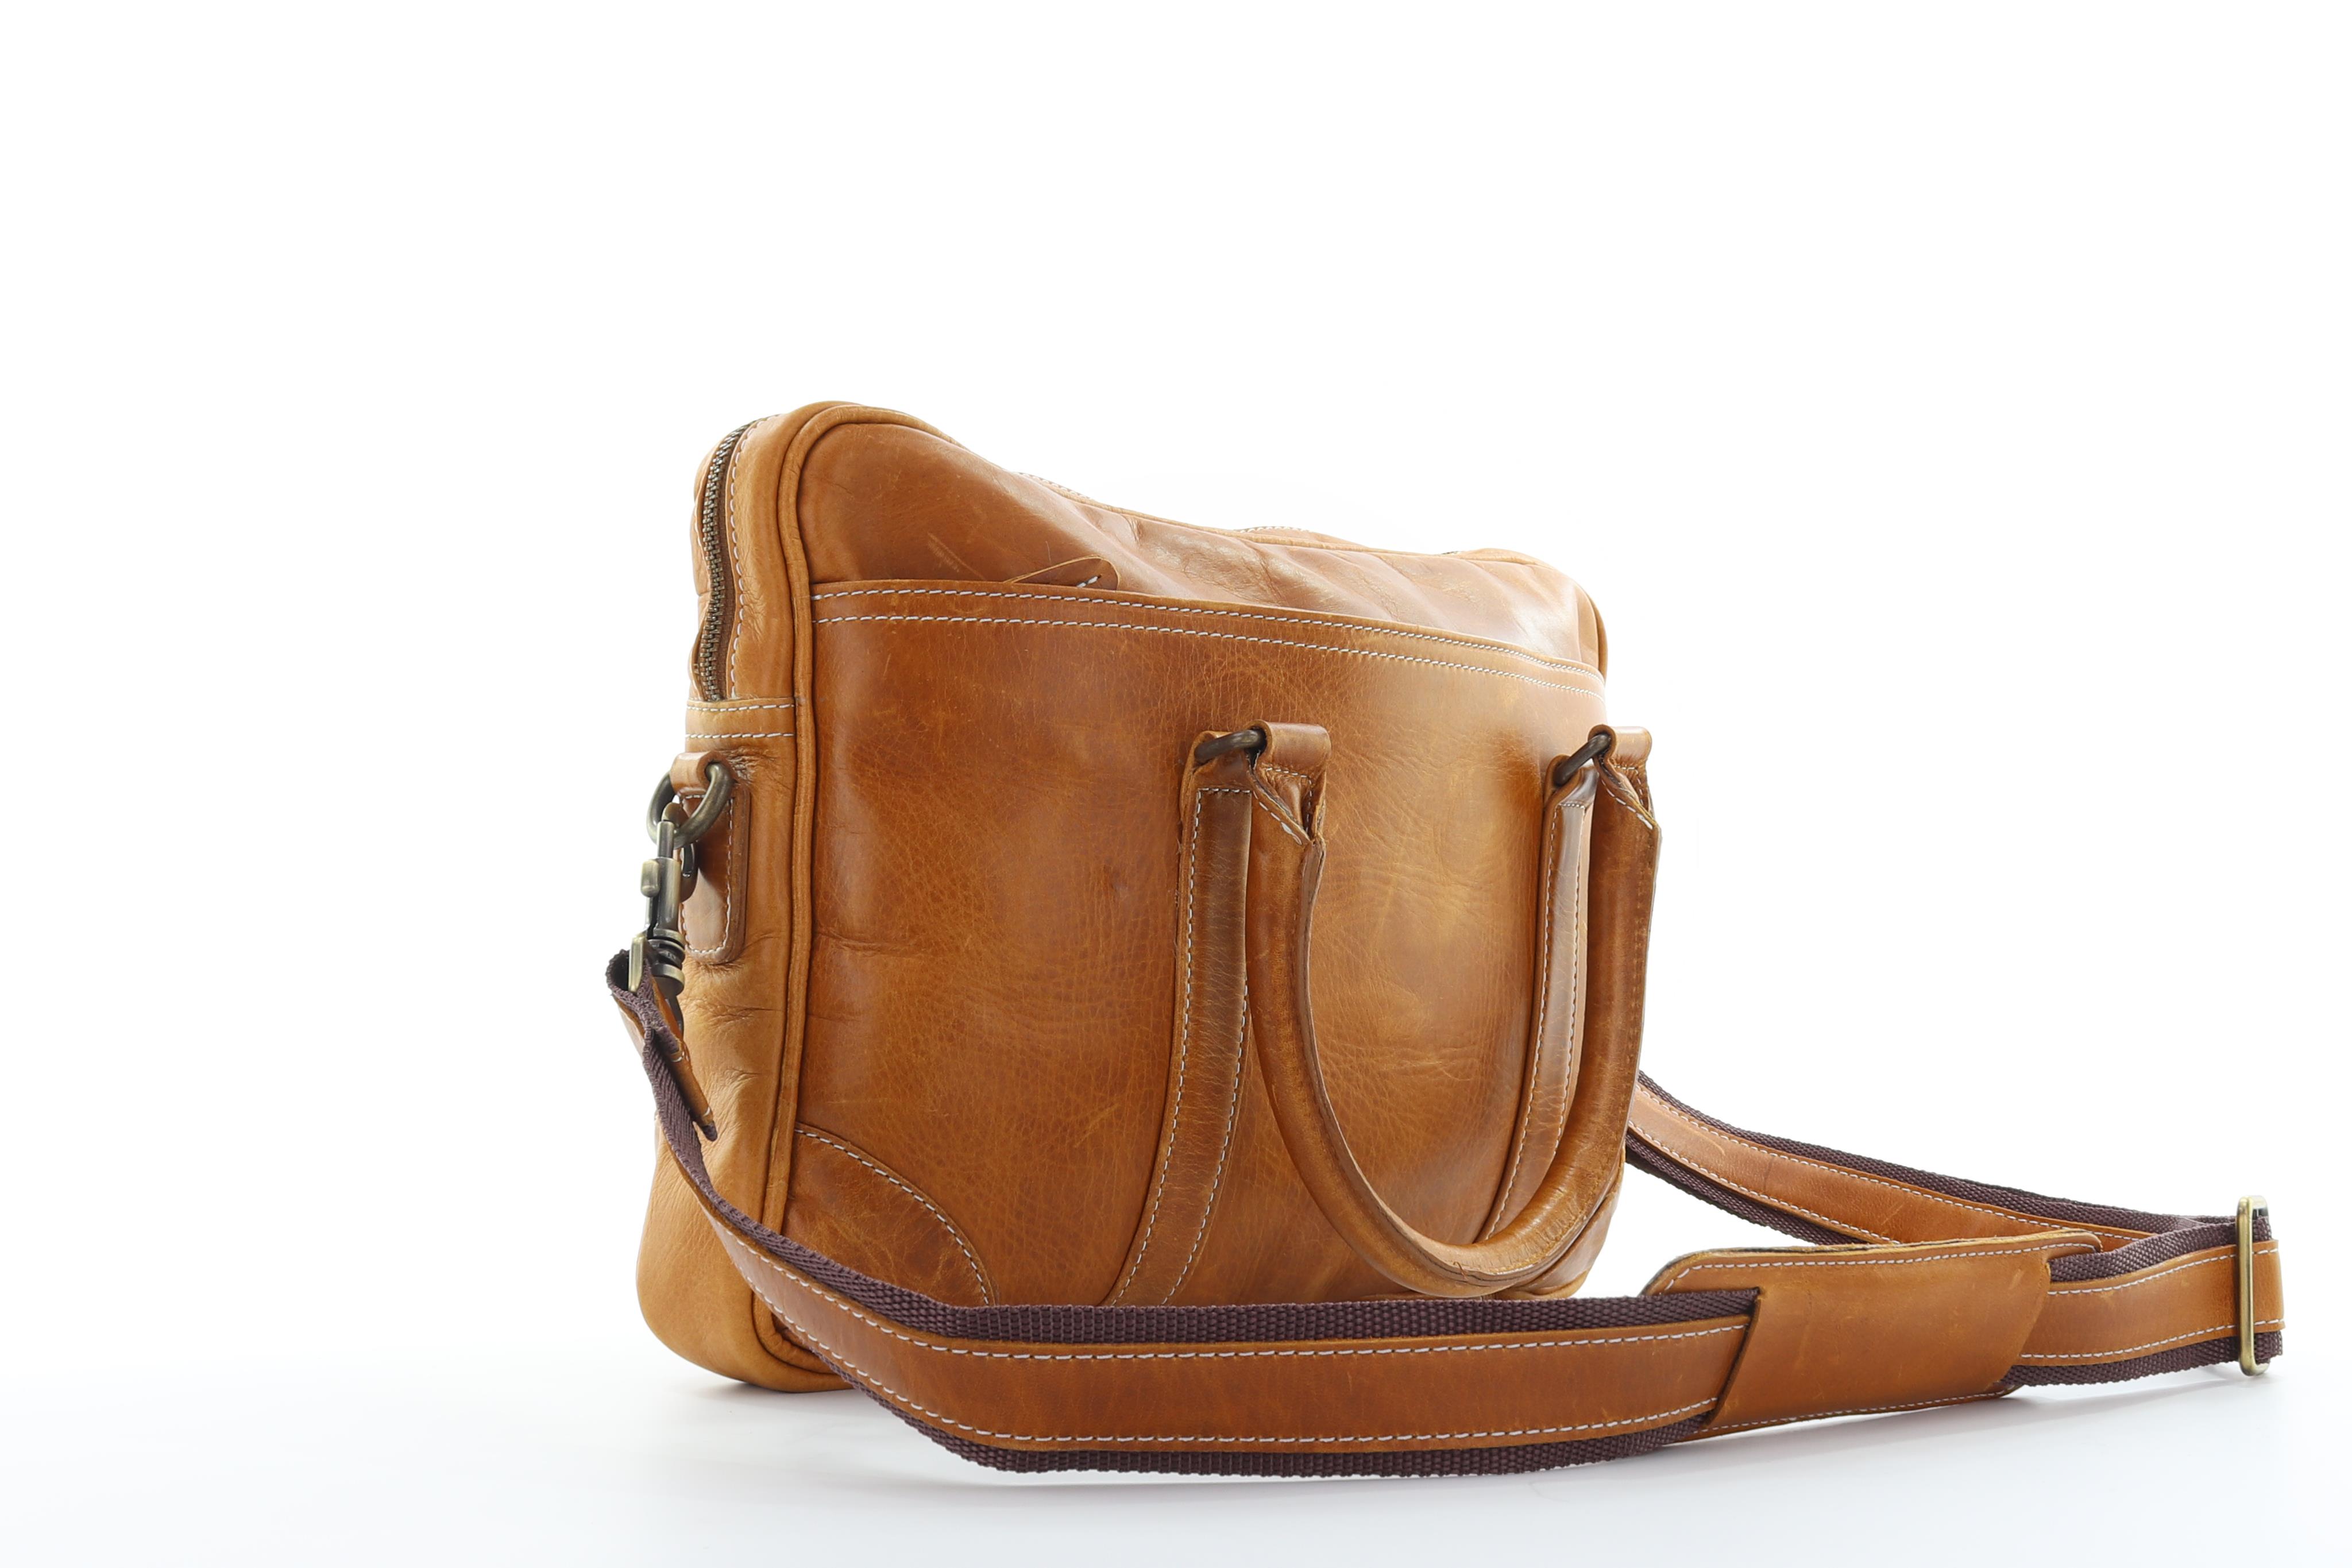 Hayden Leather Bag - Light Brown